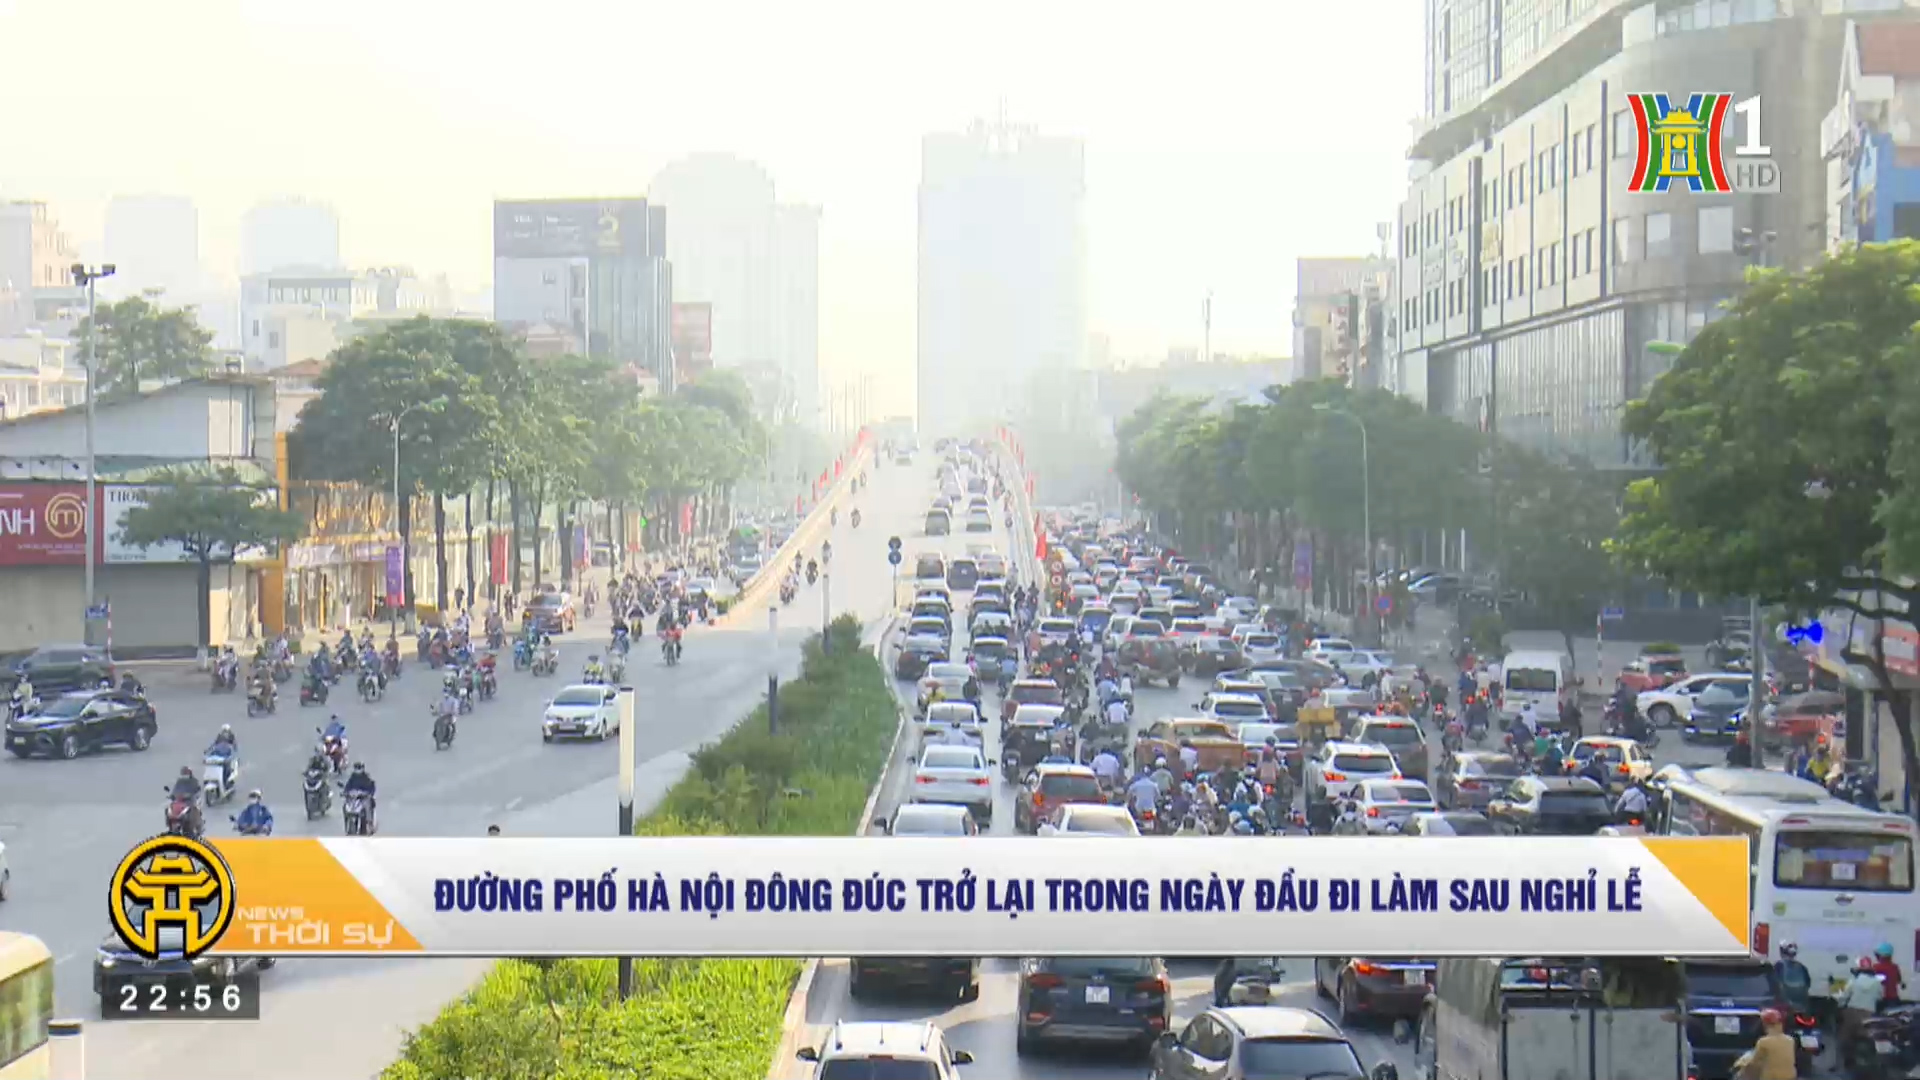 Đường phố Hà Nội đông đúc trở lại trong ngày đầu đi làm sau nghỉ lễ